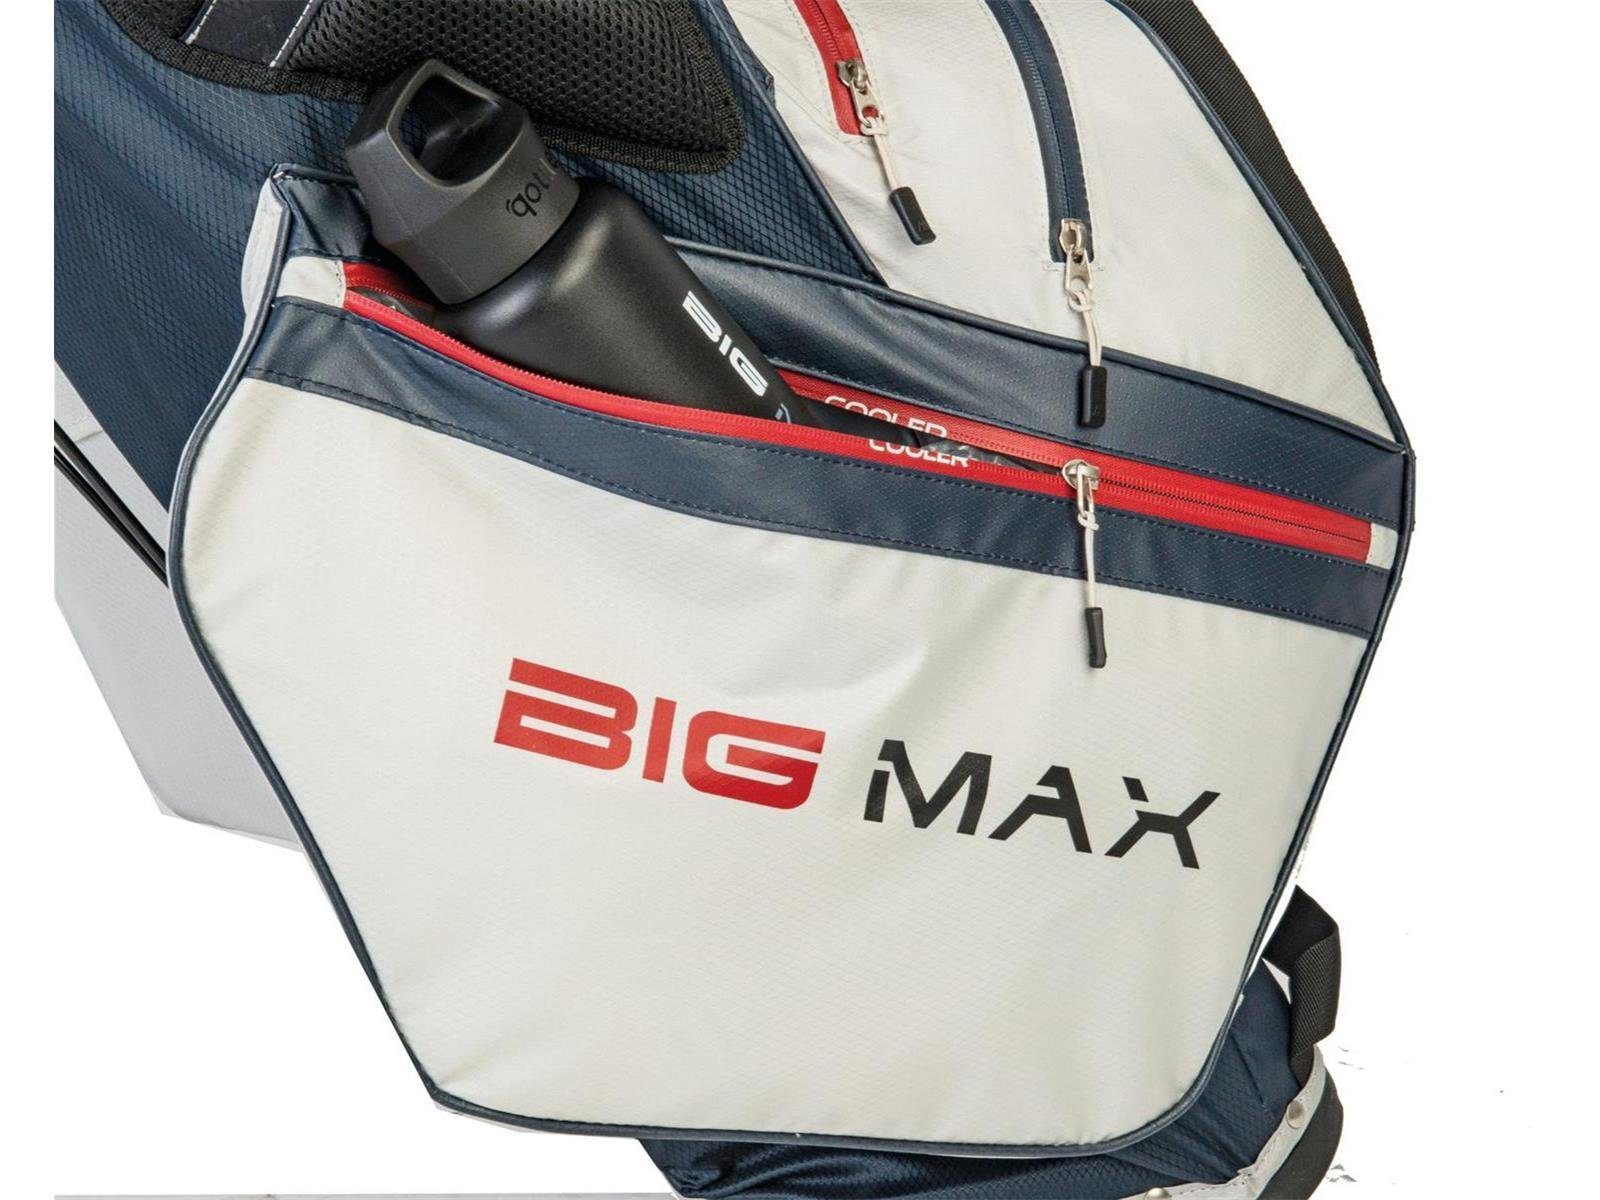 Max Merlot Divider DRI Tour, Ständerbag MAX 14-fach Golf Golfreisetasche Big BIG Wasserabweisen LITE Hybrid I